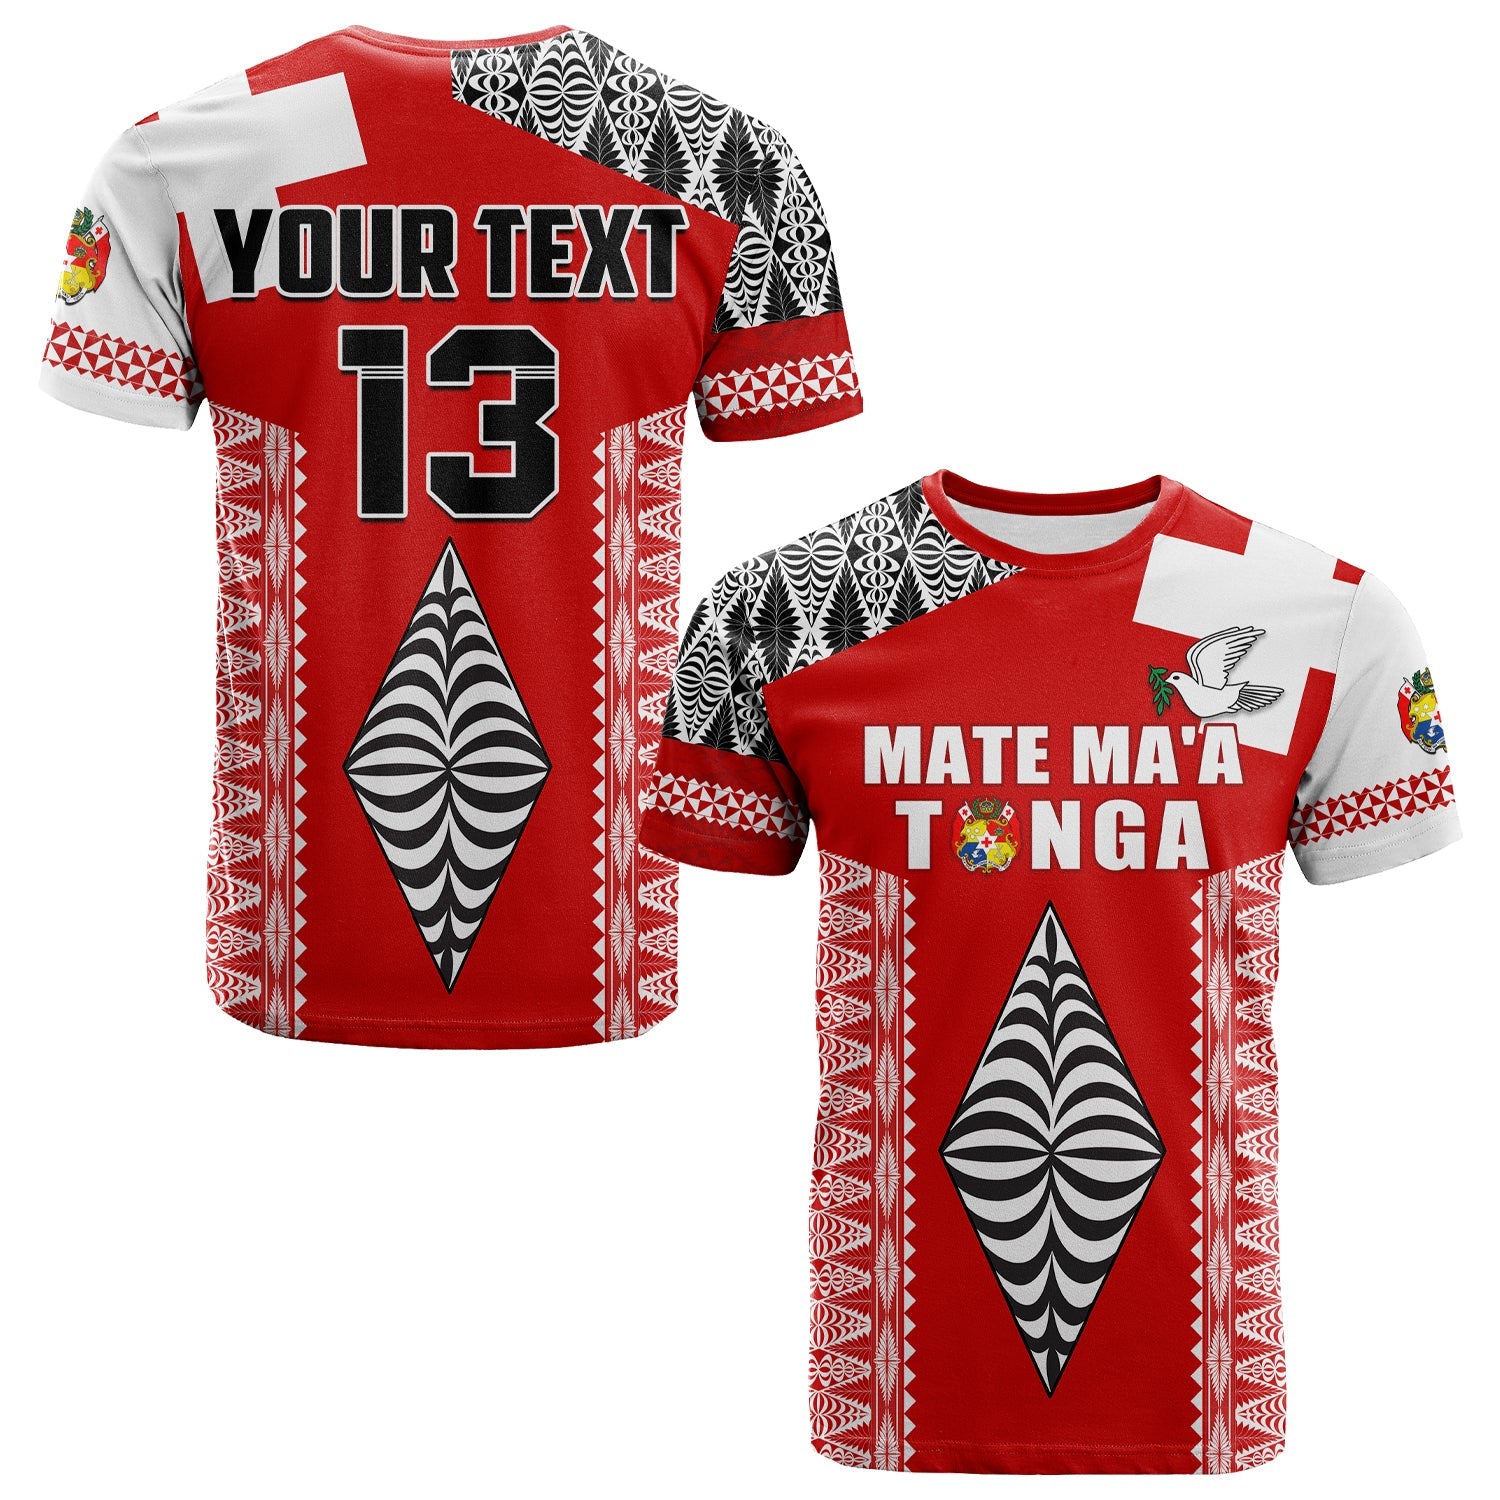 (Custom Text and Number) Tonga Rugby T Shirt Kupesi Ngatu Mate Maa Tonga LT13 Red - Polynesian Pride